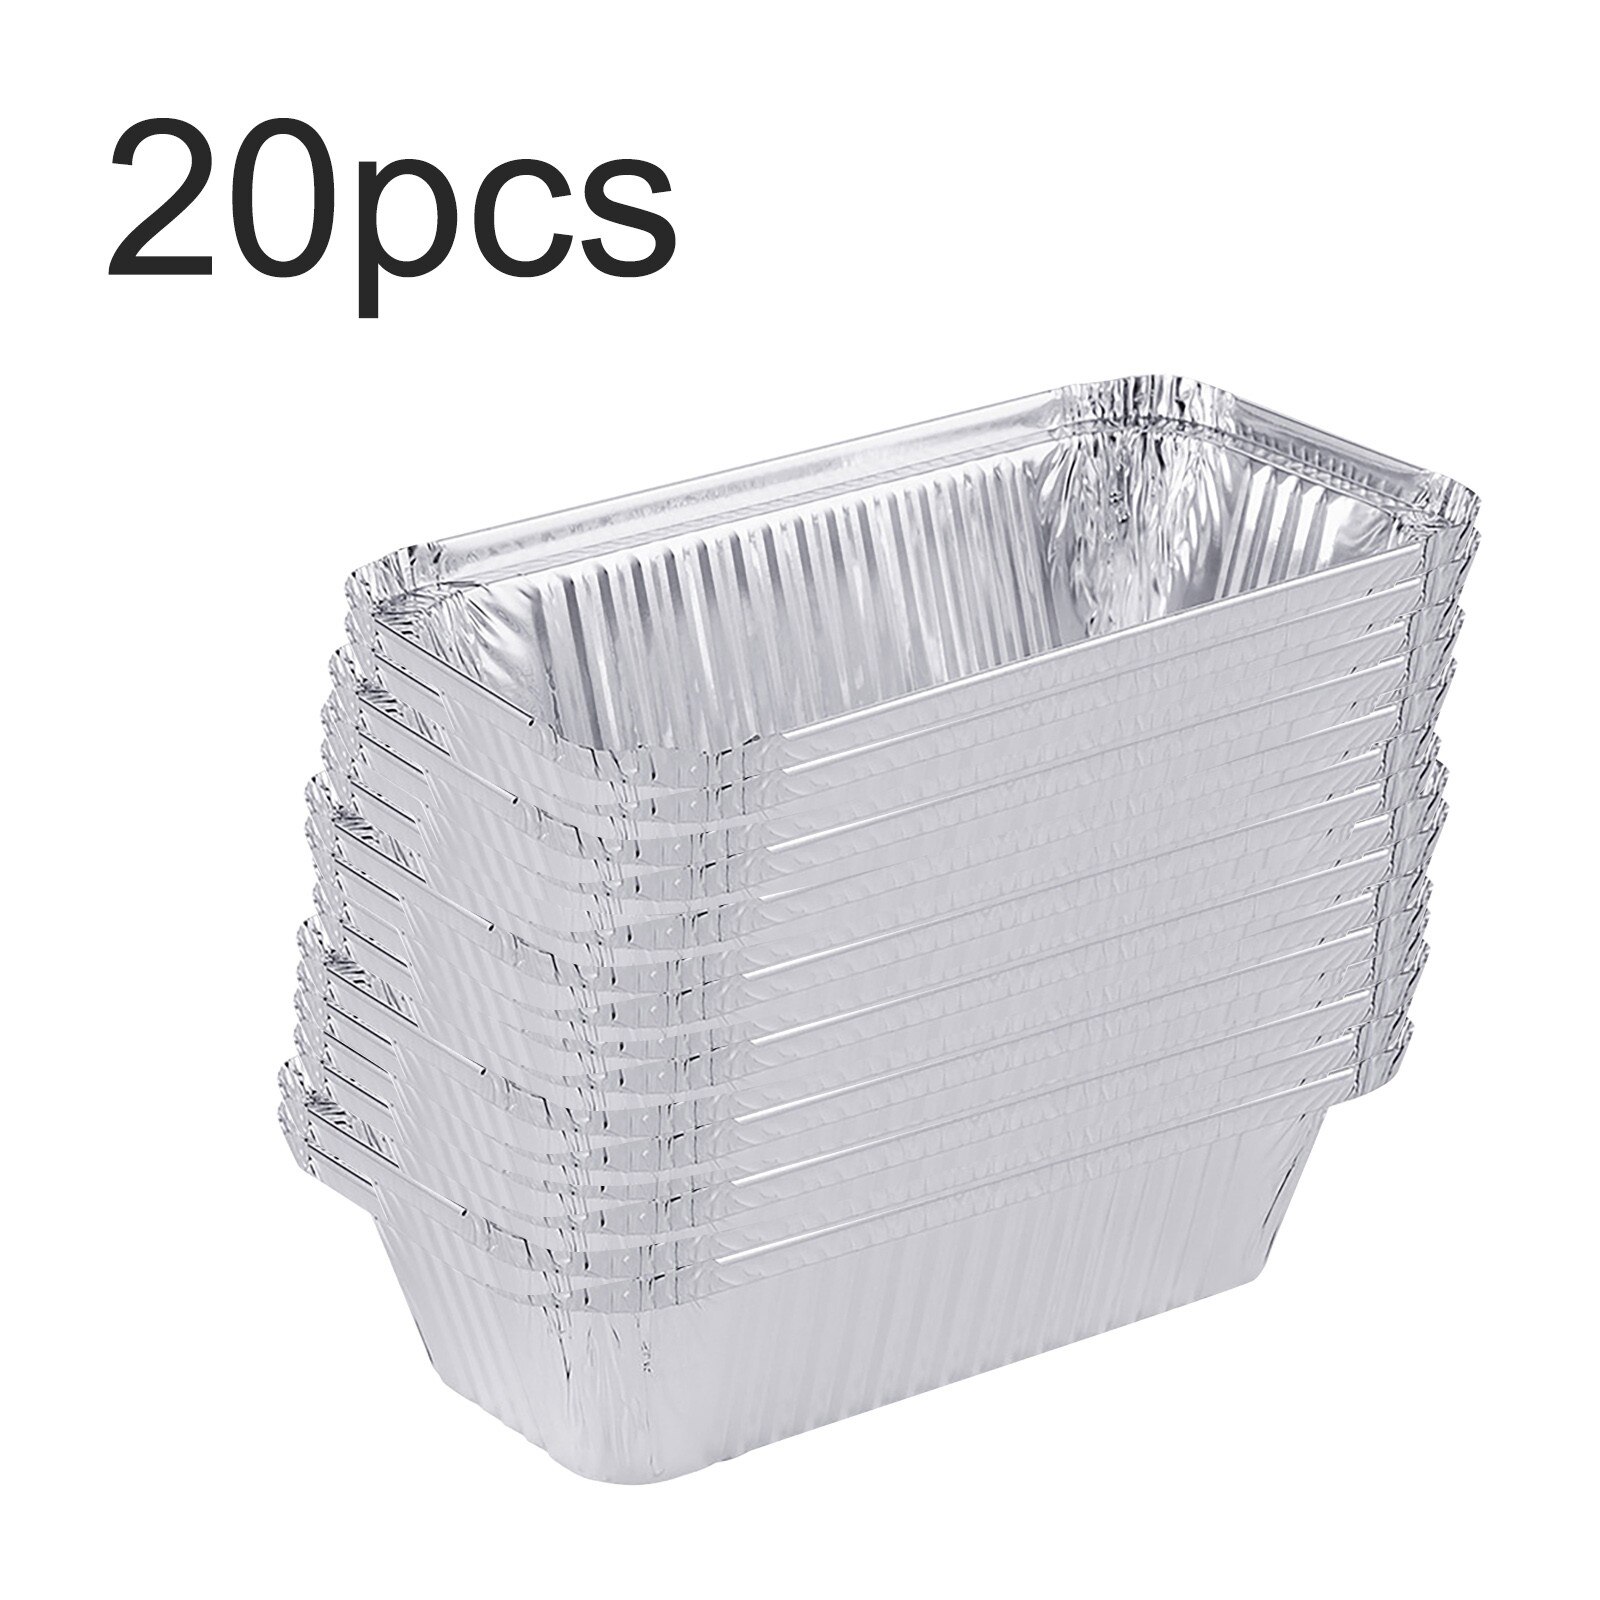 20Pcs Folie Pannen Met Deksels Aluminium Pannen Met Covers Wegwerp Voedsel Containers Bbq Bakken Tin Folie